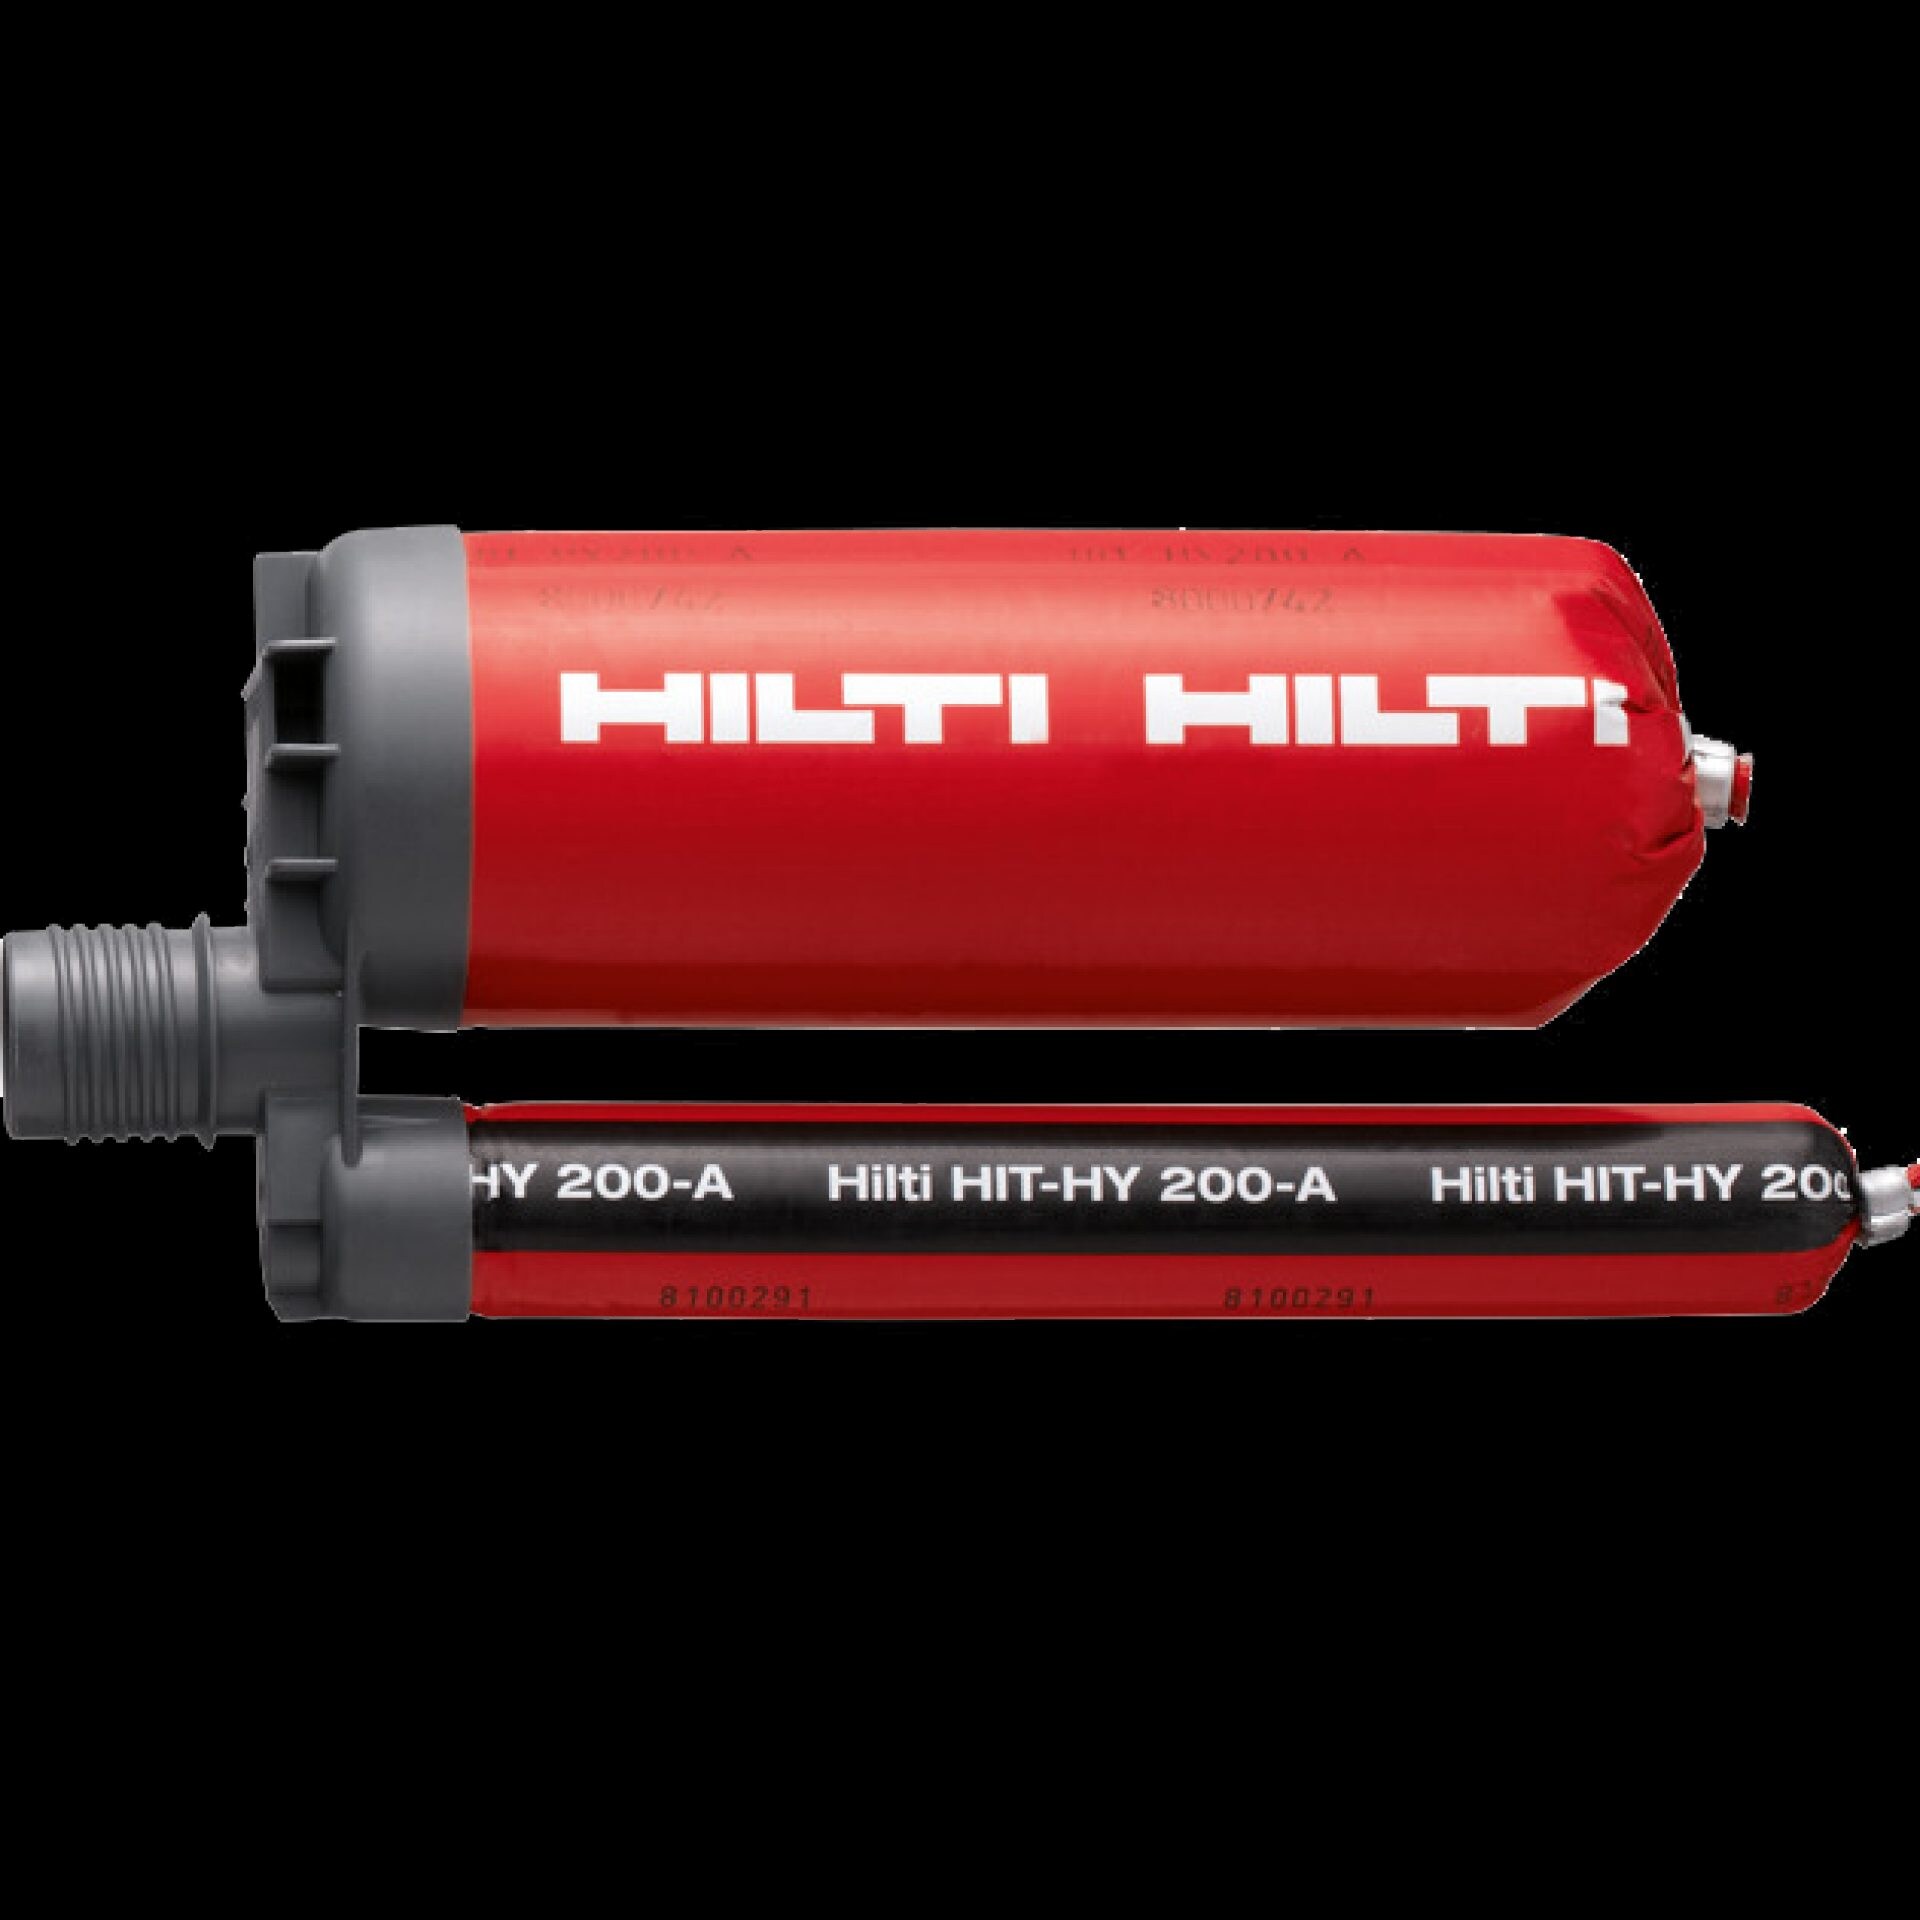 HIT-HY 200-A hybridmassa med hög prestanda för tunga infästningar och armering, ingår i Hilti SafeSet-systemet